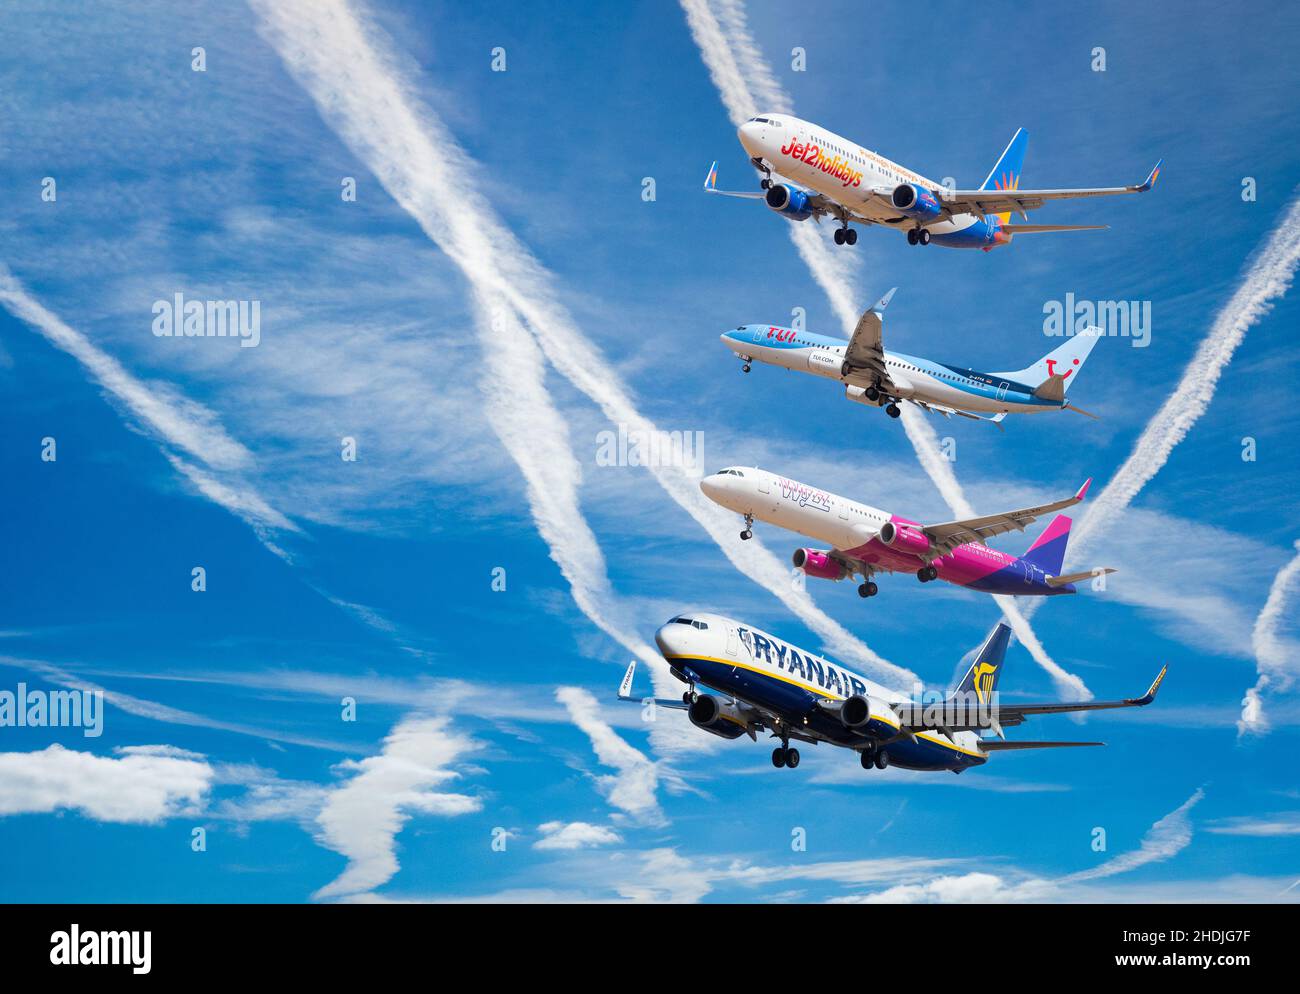 Jet 2, TUI, Ryanair und Wizzair, Flugzeuge gegen blauen Himmel. Luftfahrtindustrie, globale Erwärmung, Klimawandel, steigende Aktienkurse.. Konzept Stockfoto